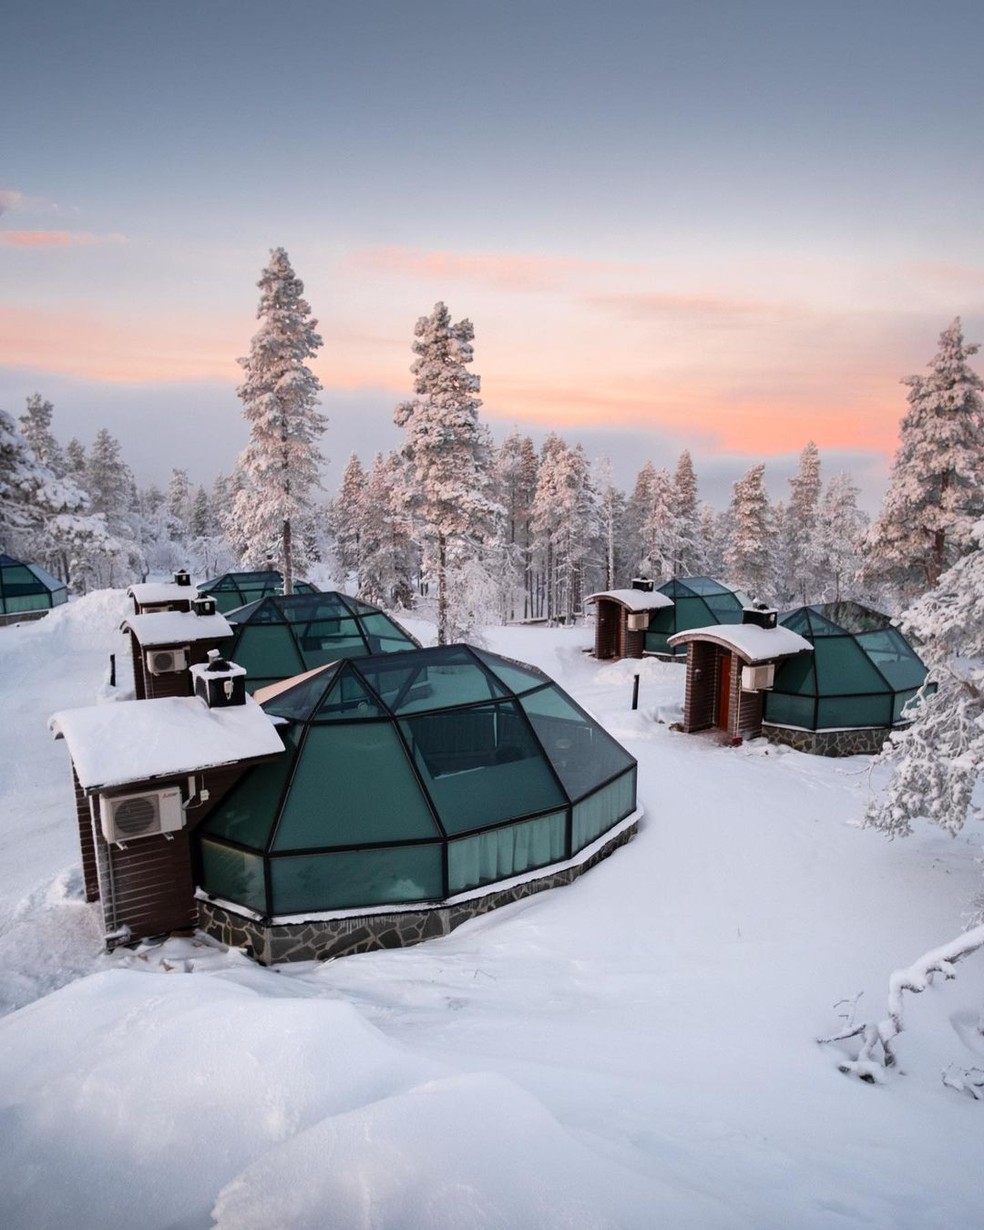 Iglus de vidro com vista 360° hospedam duas pessoas na Finlândia — Foto: Divulgação/Levin Iglut